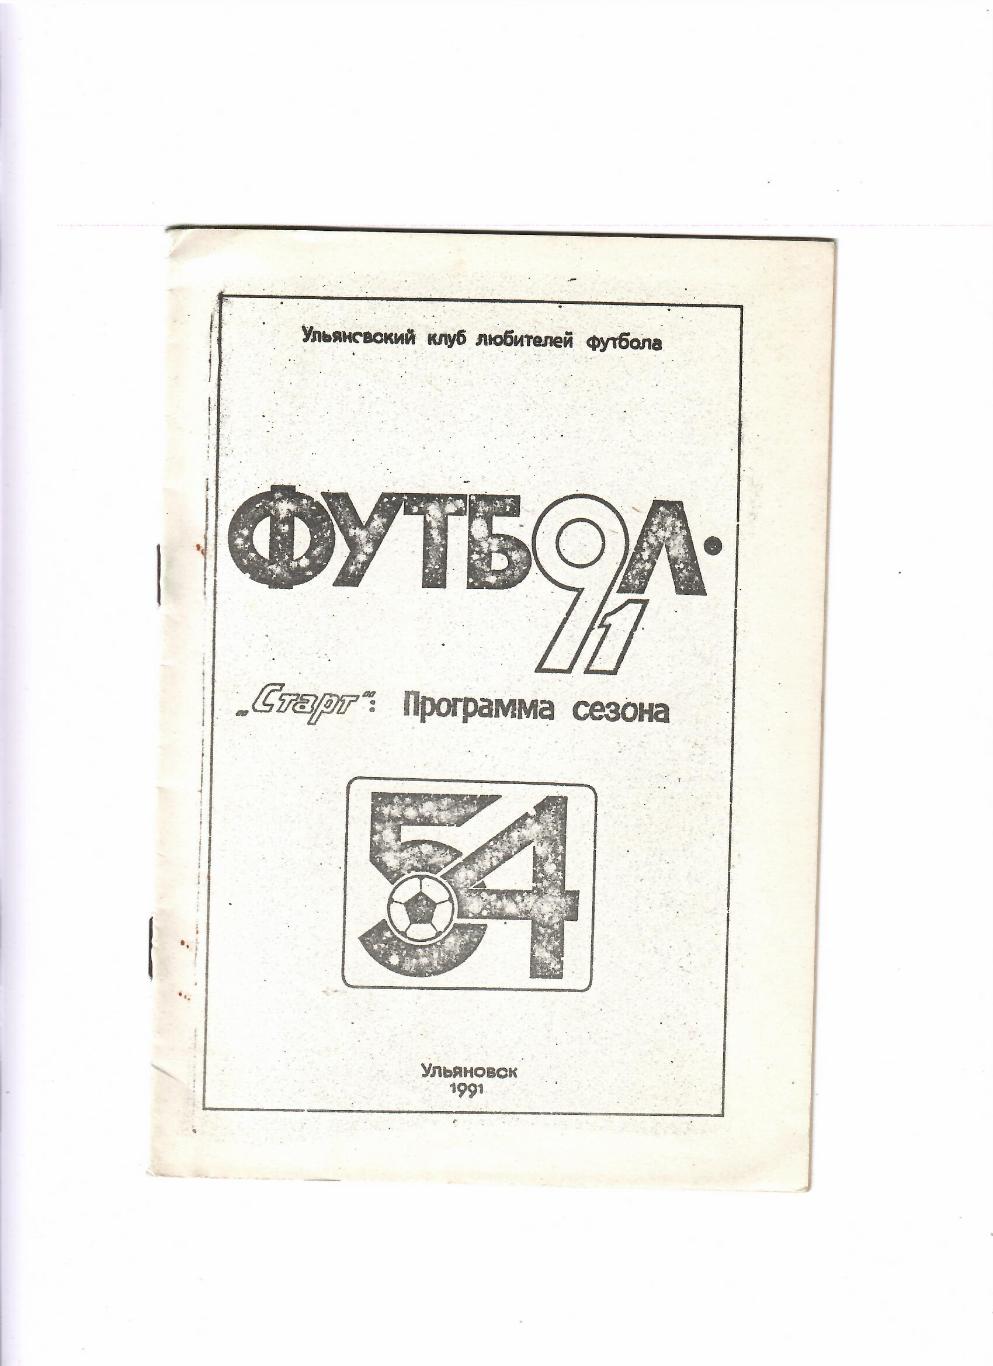 Старт Ульяновск 1991 программа сезона